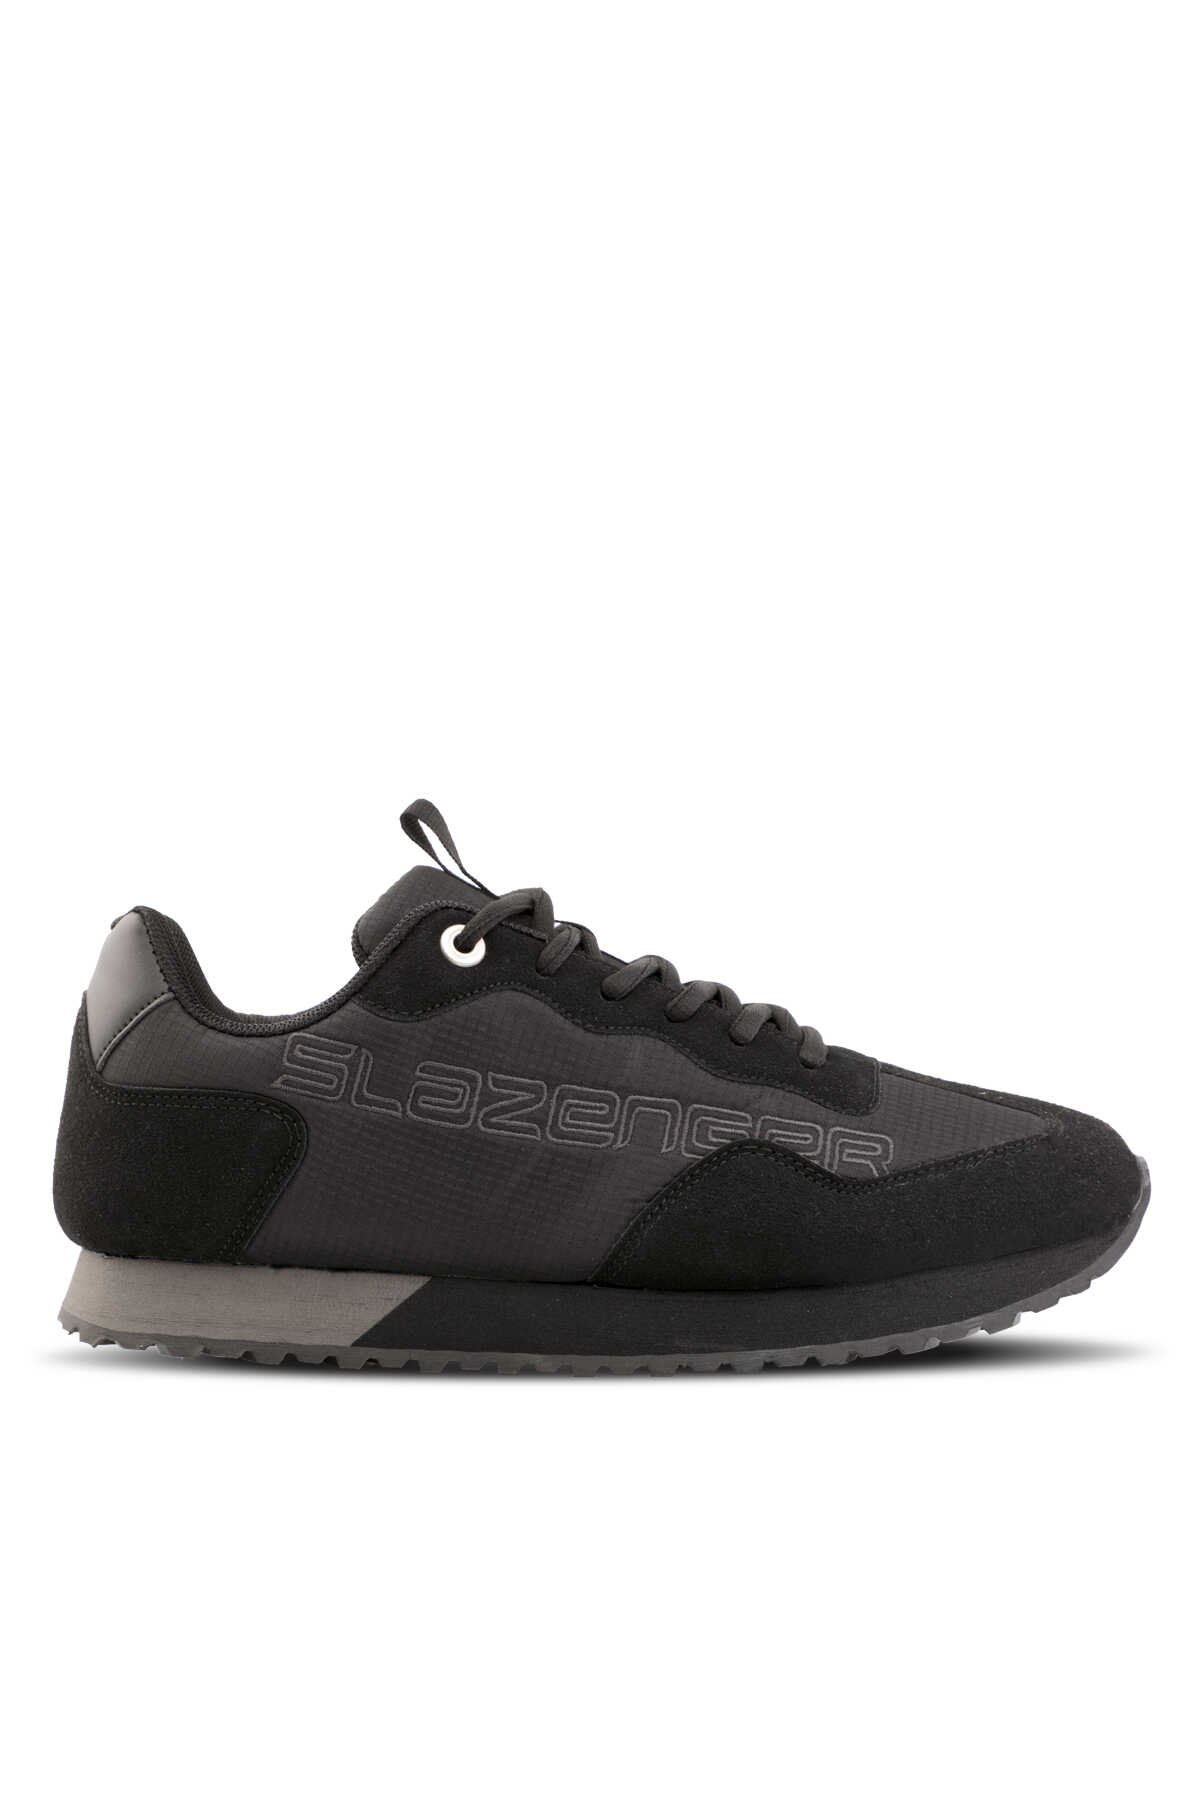 Slazenger - Slazenger BOBOS Sneaker Erkek Ayakkabı Siyah